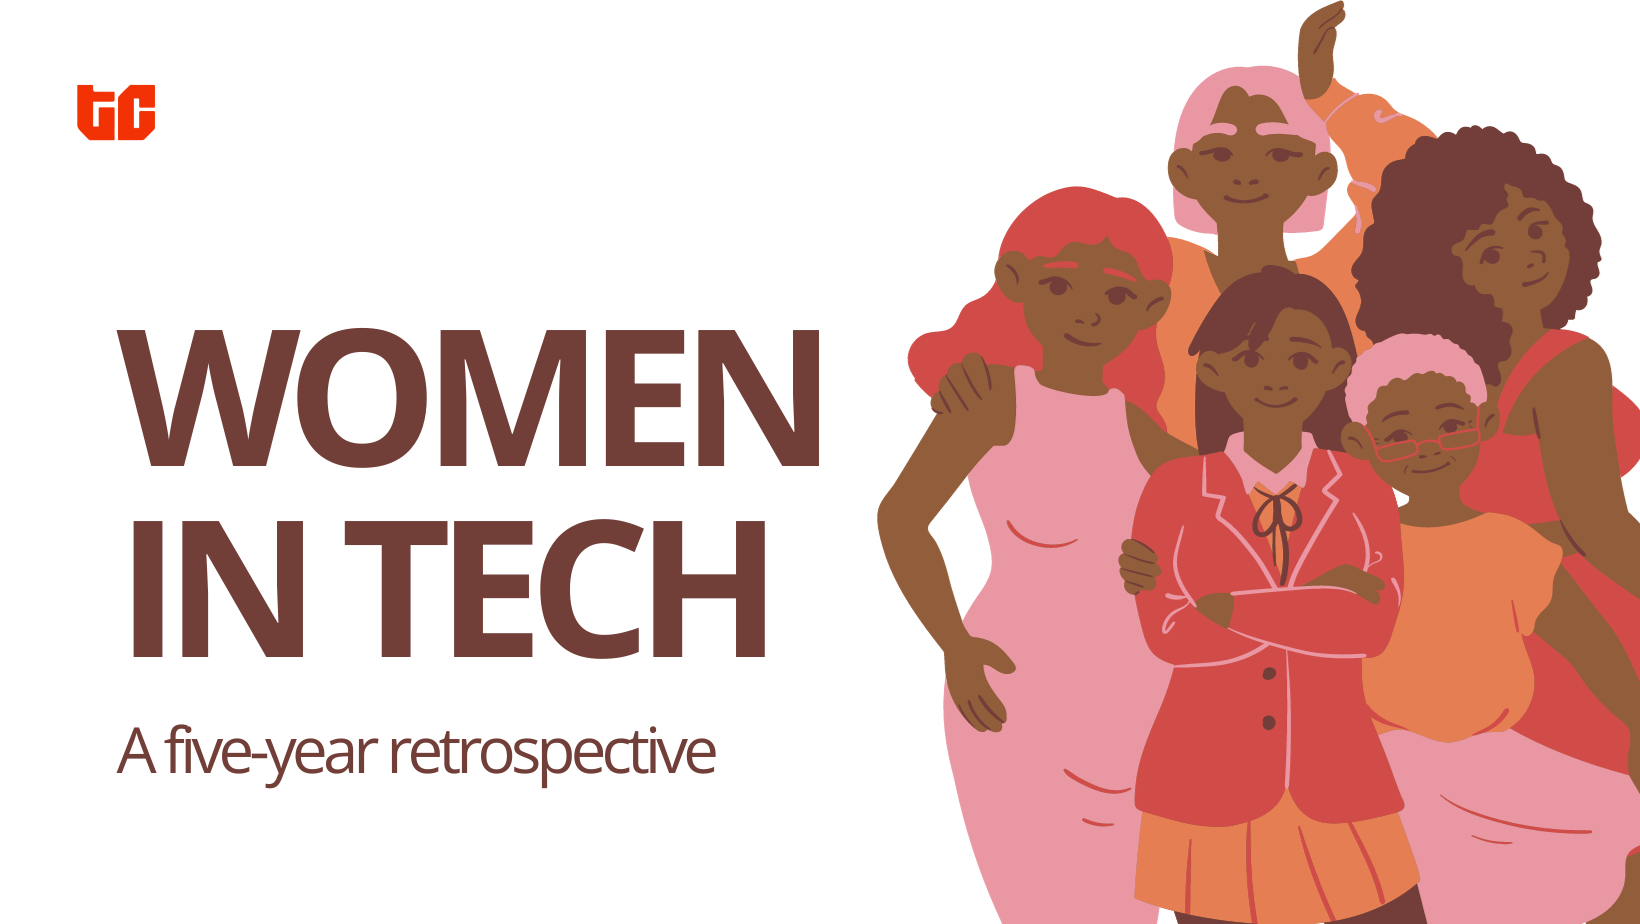 Girls in tech: a five-year retrospective.